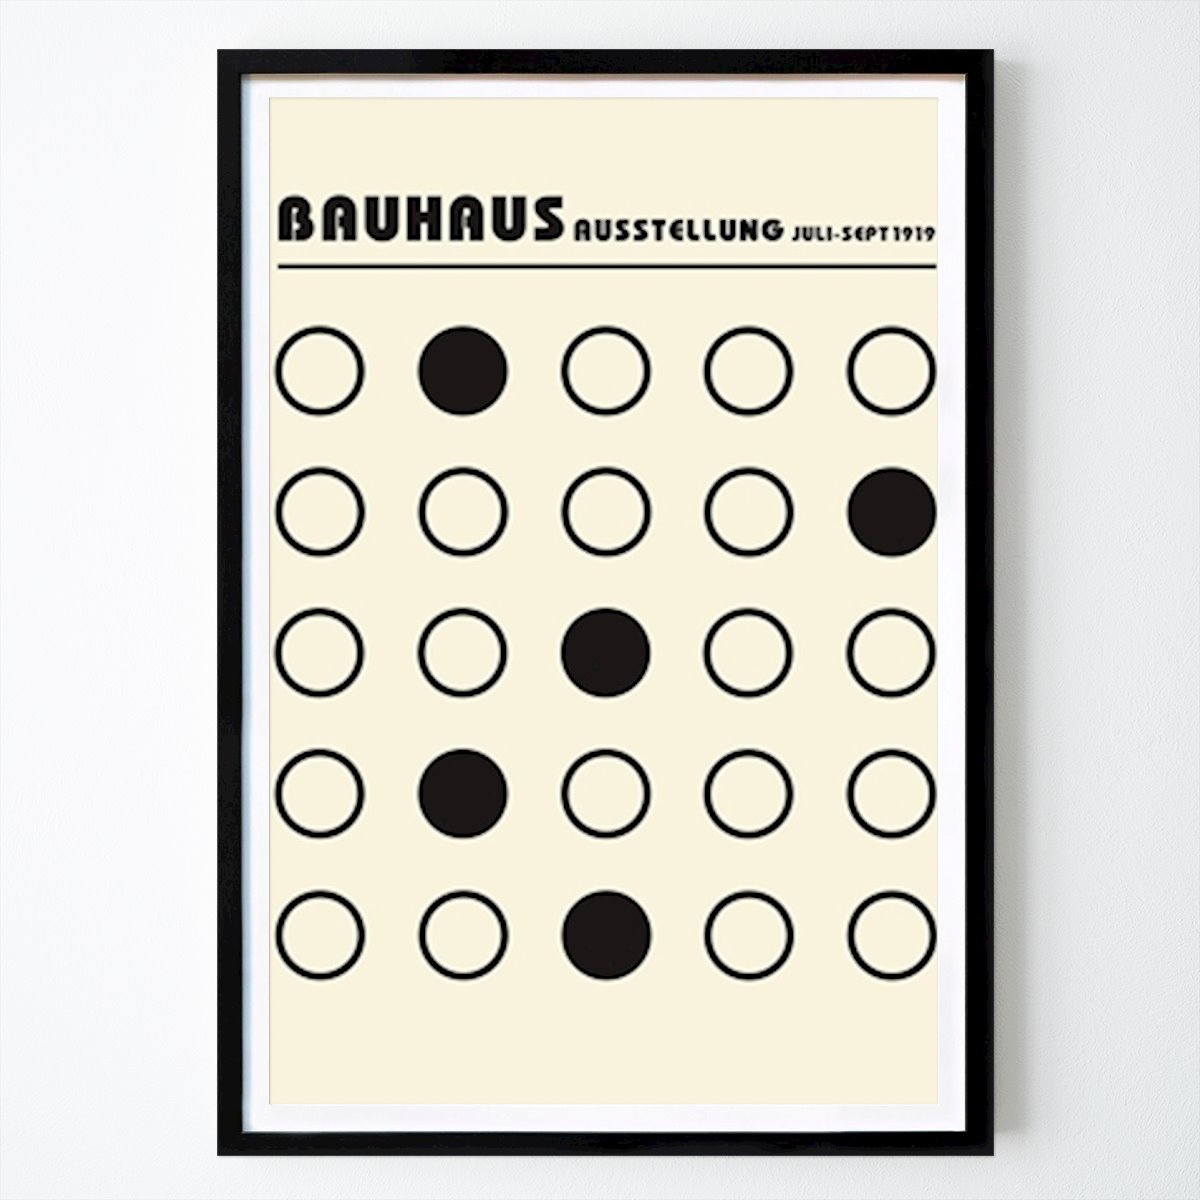 Poster: Bauhaus Ausstellung Poster von William Gustafsson von Printler